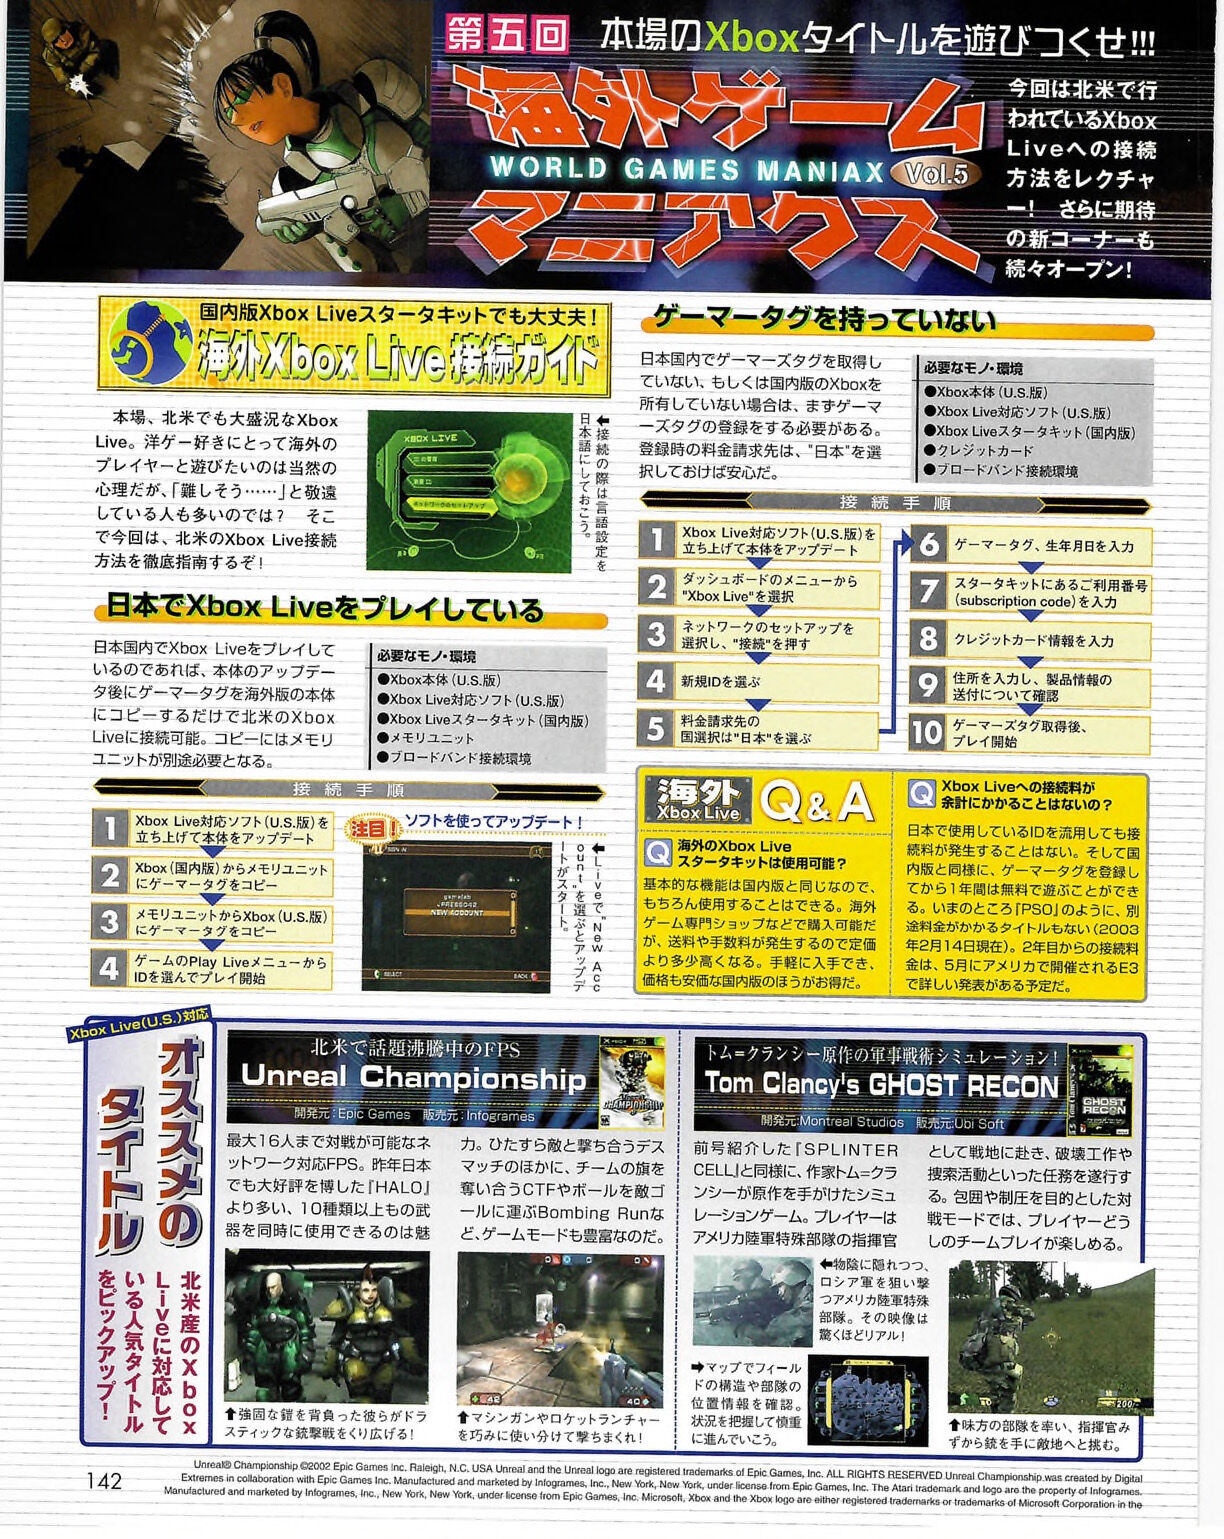 Famitsu_Xbox_2003-04_jp2 141